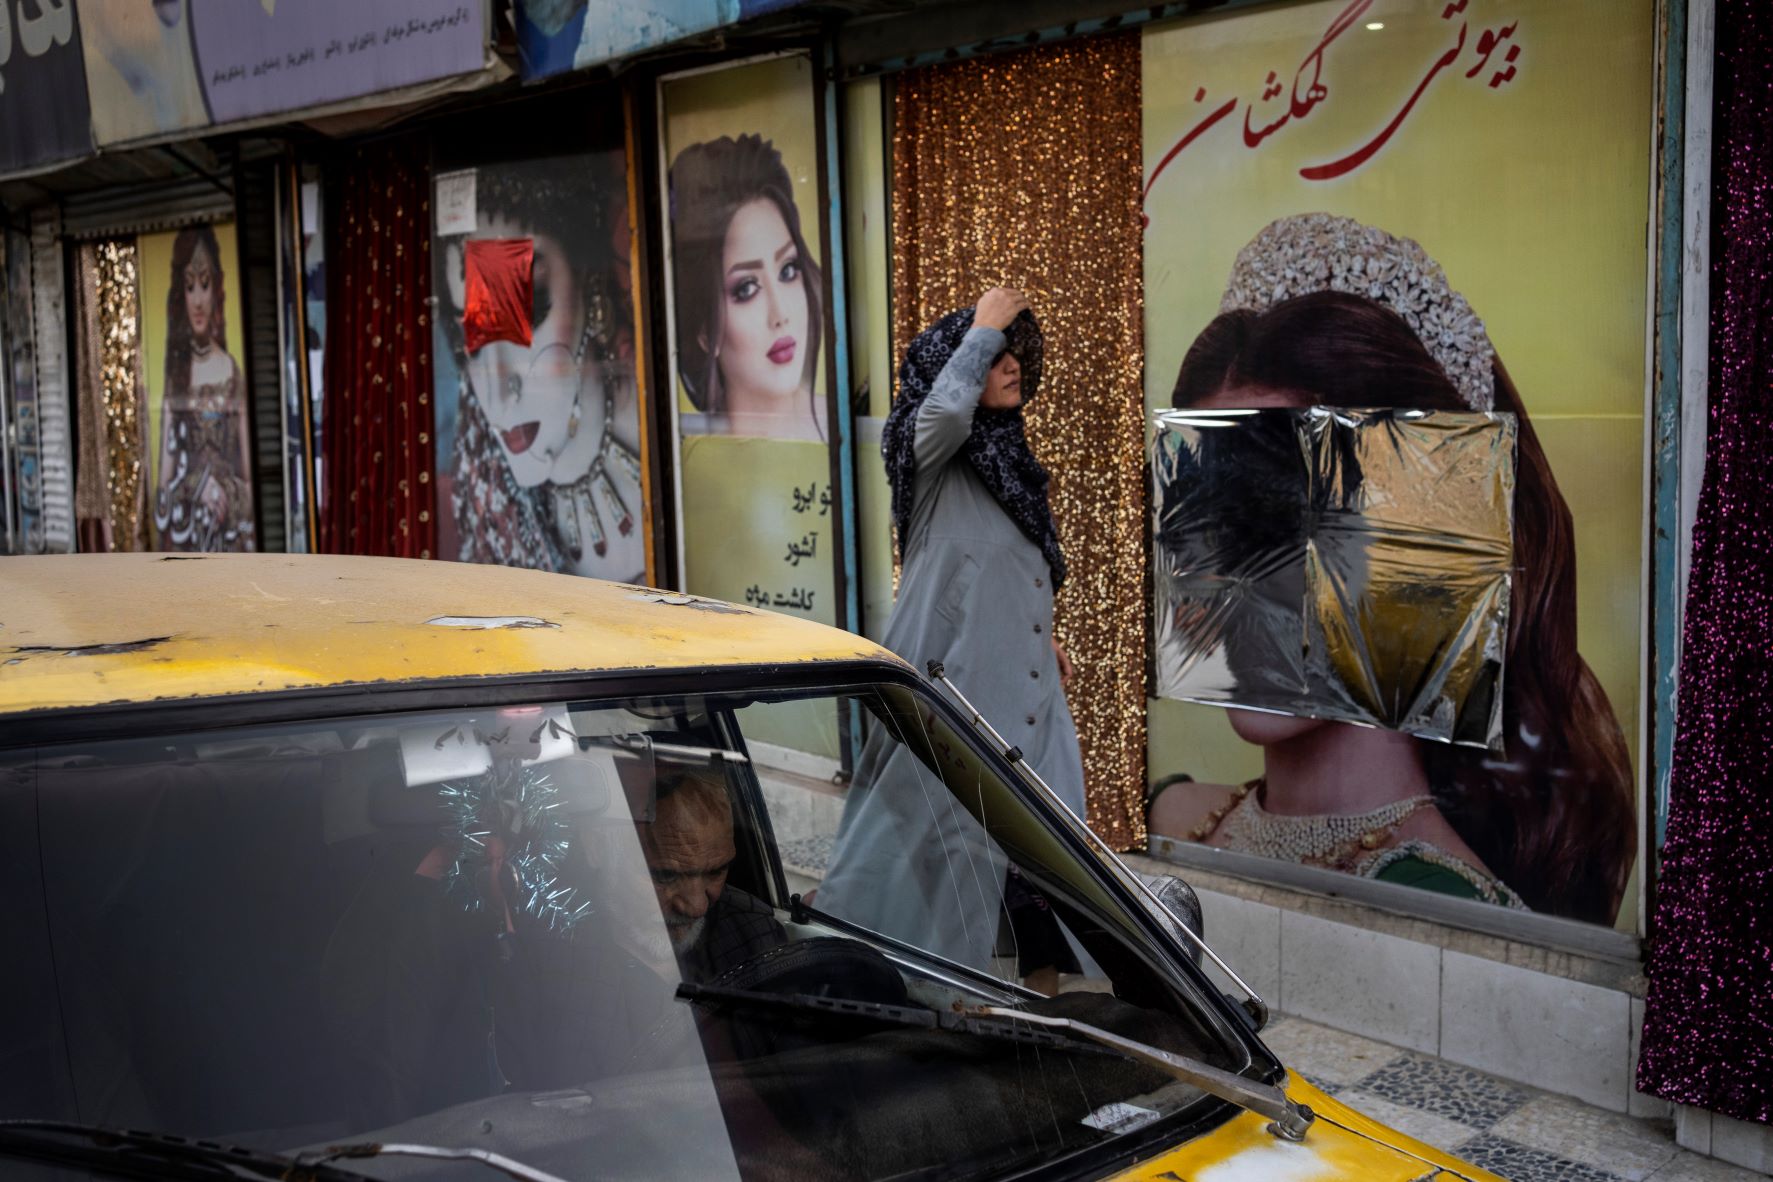 أفغانية تعدل حجابها أمام صالون تجميل في كابول. وقد عمدت "طالبان" إلى تشويه صور النساء على الجدران أو تغطيتها.